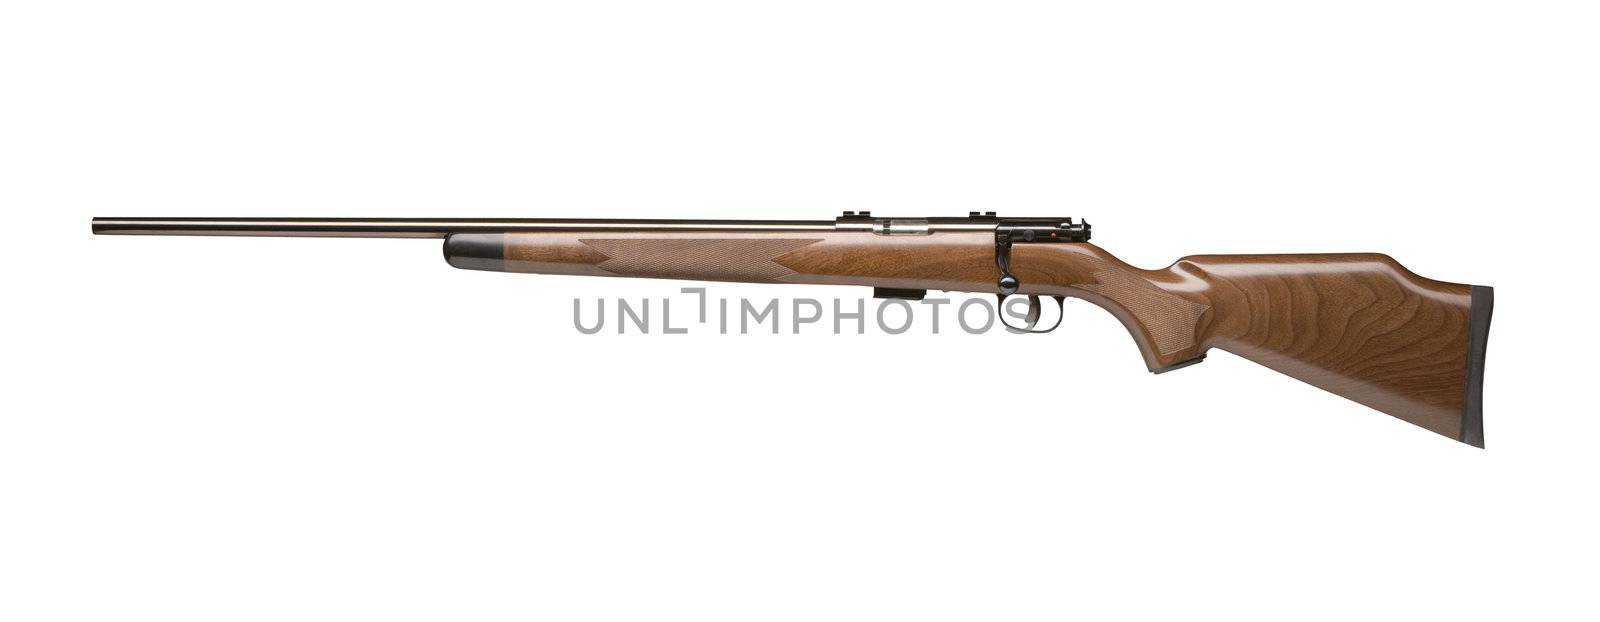 vintage gun isolated on white by ozaiachin